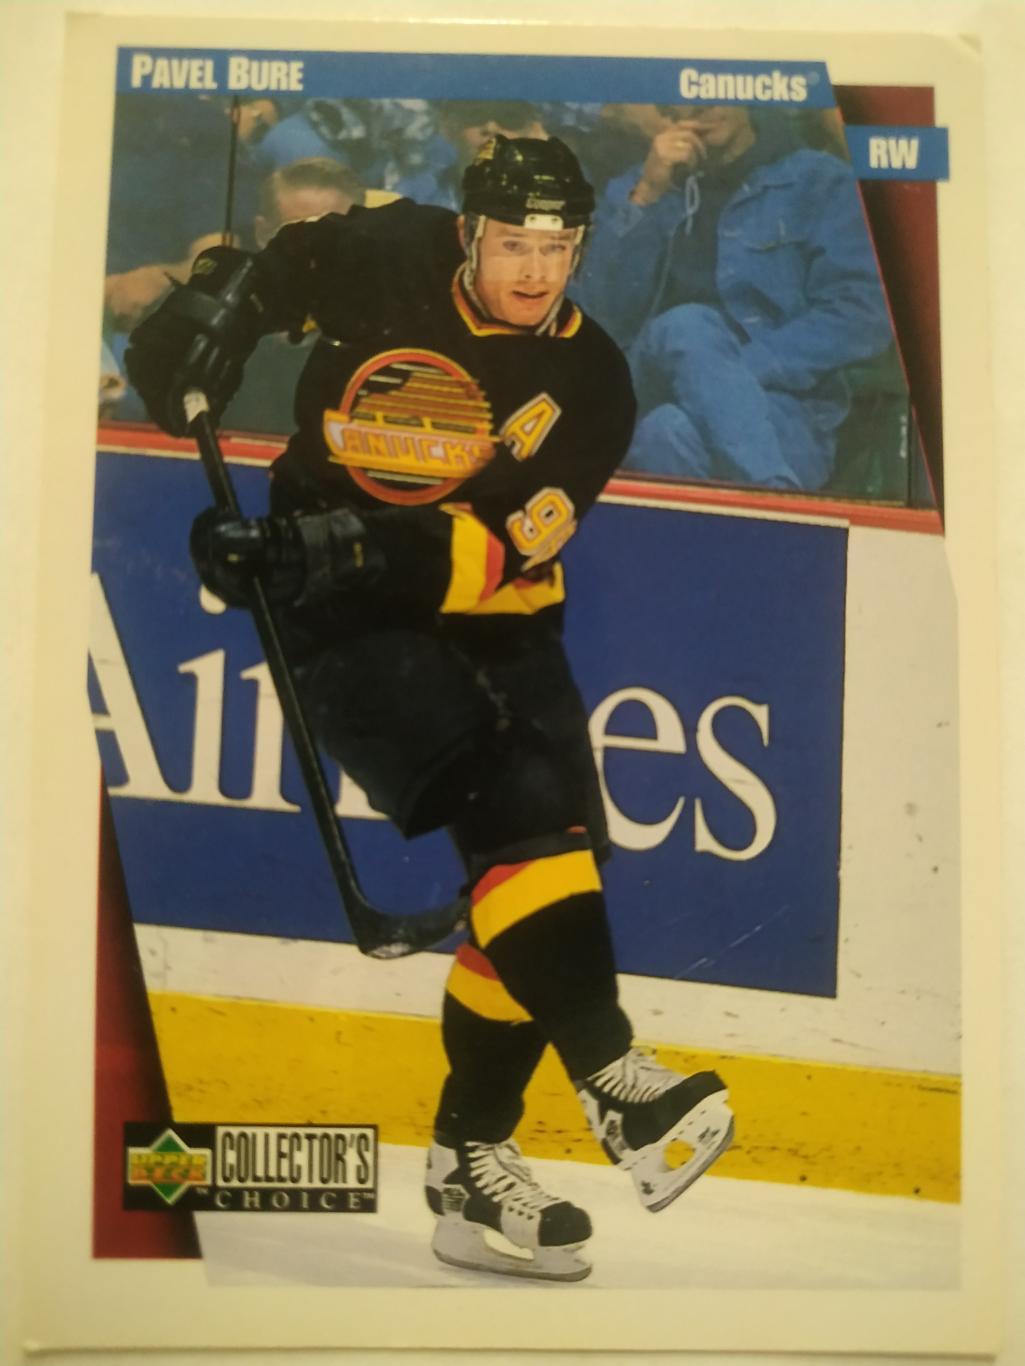 ХОККЕЙ КАРТОЧКА НХЛ UPPER DECK 1997-98 NHL PAVEL BURE VANCOUVER CANUCKS #255